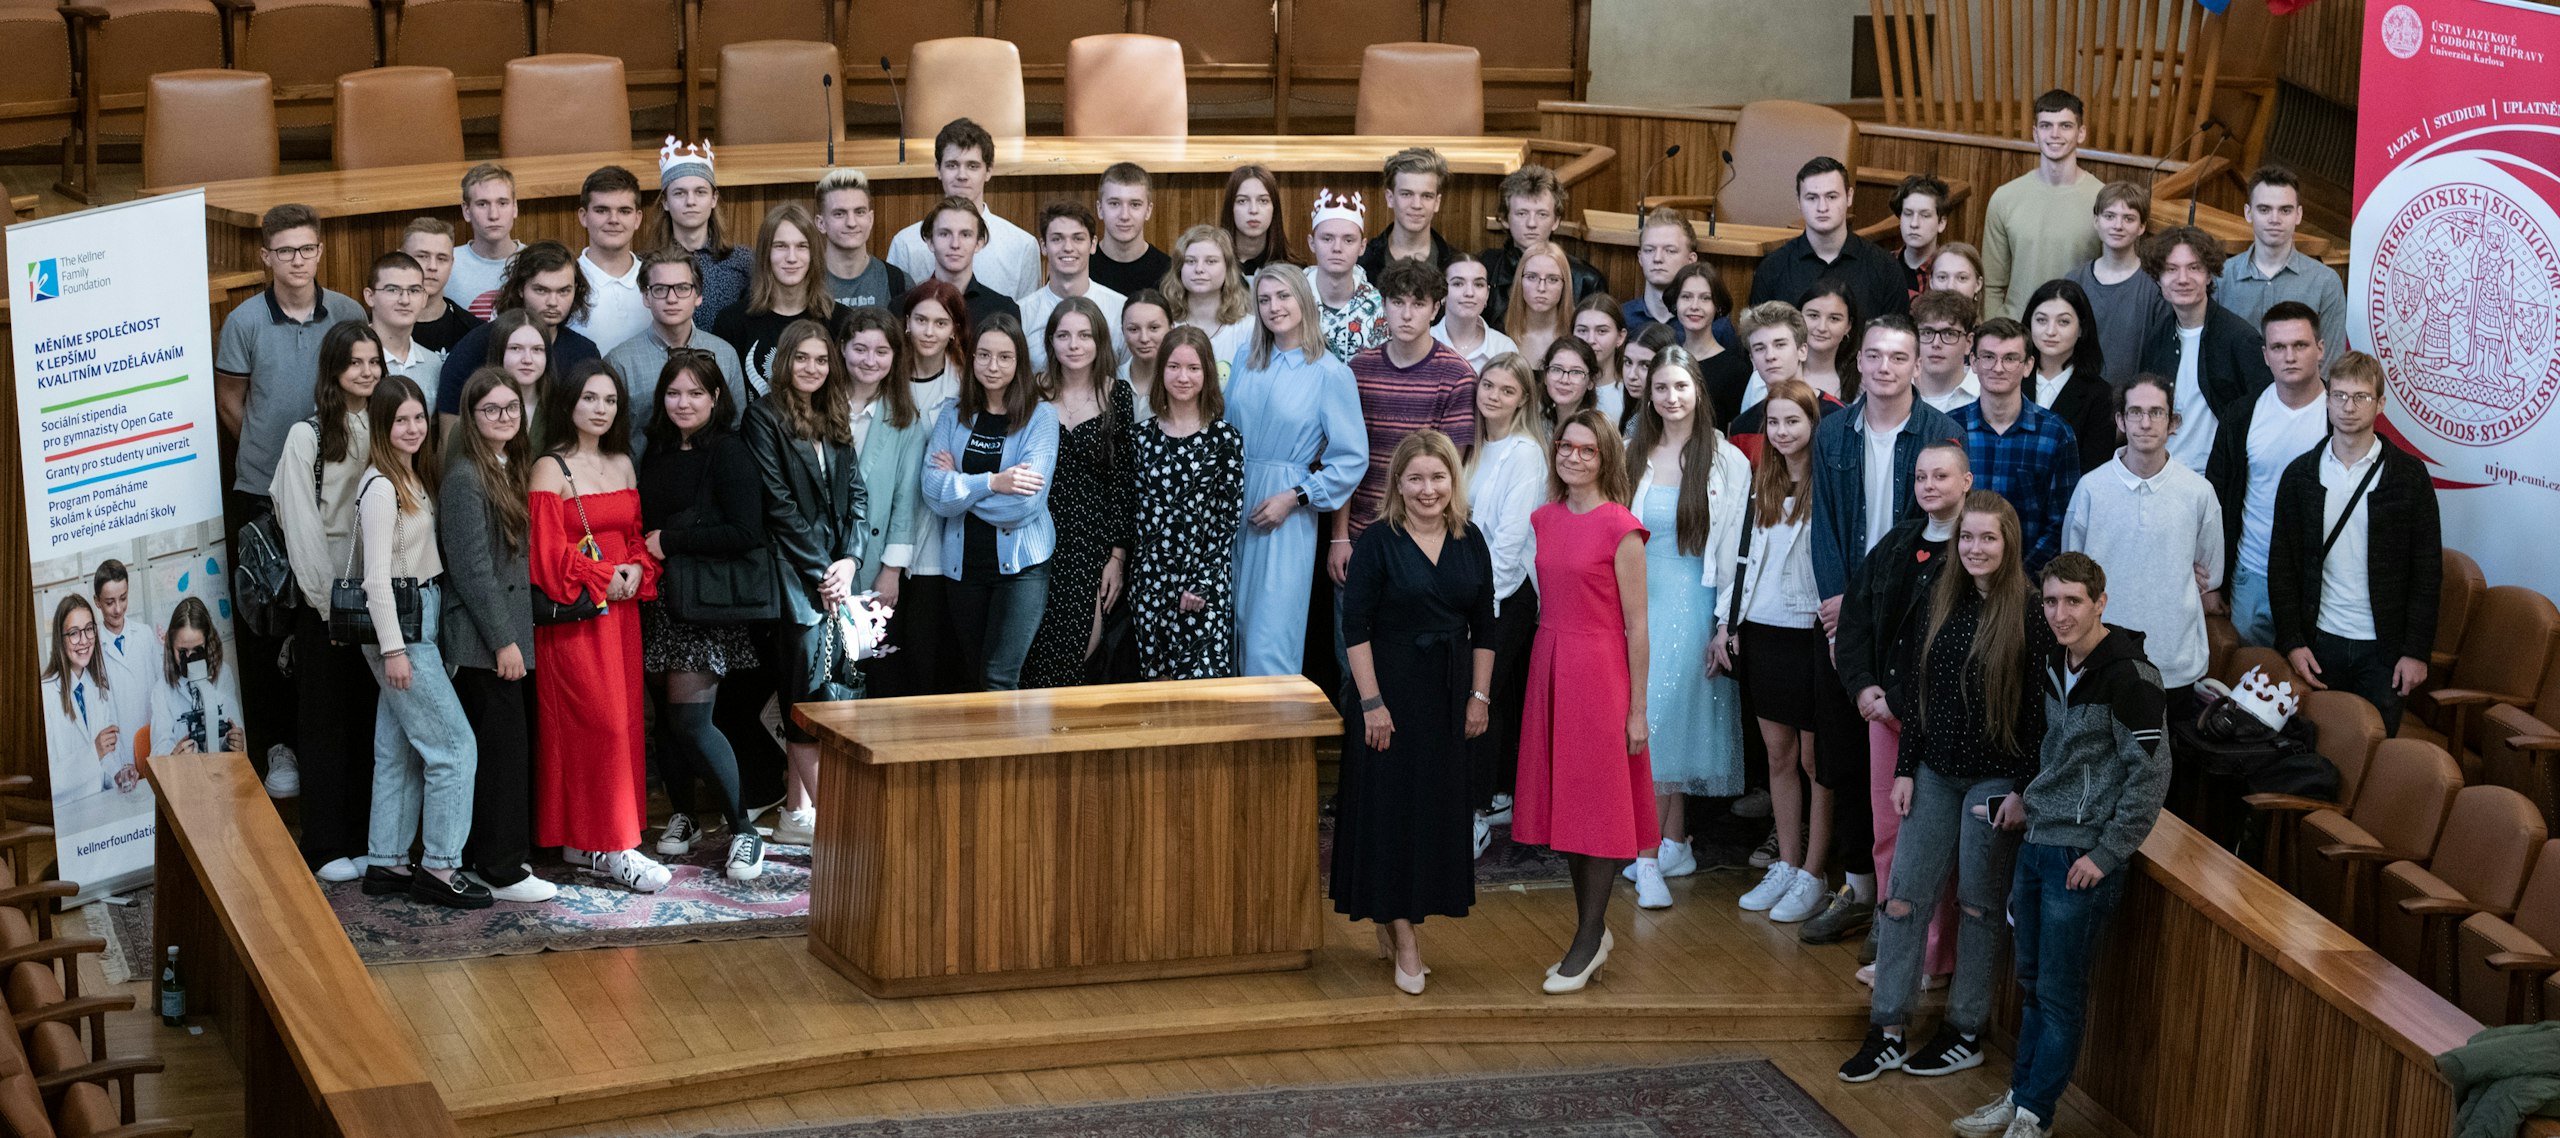 ÚJOP UK, 75 ukrajinských studentů